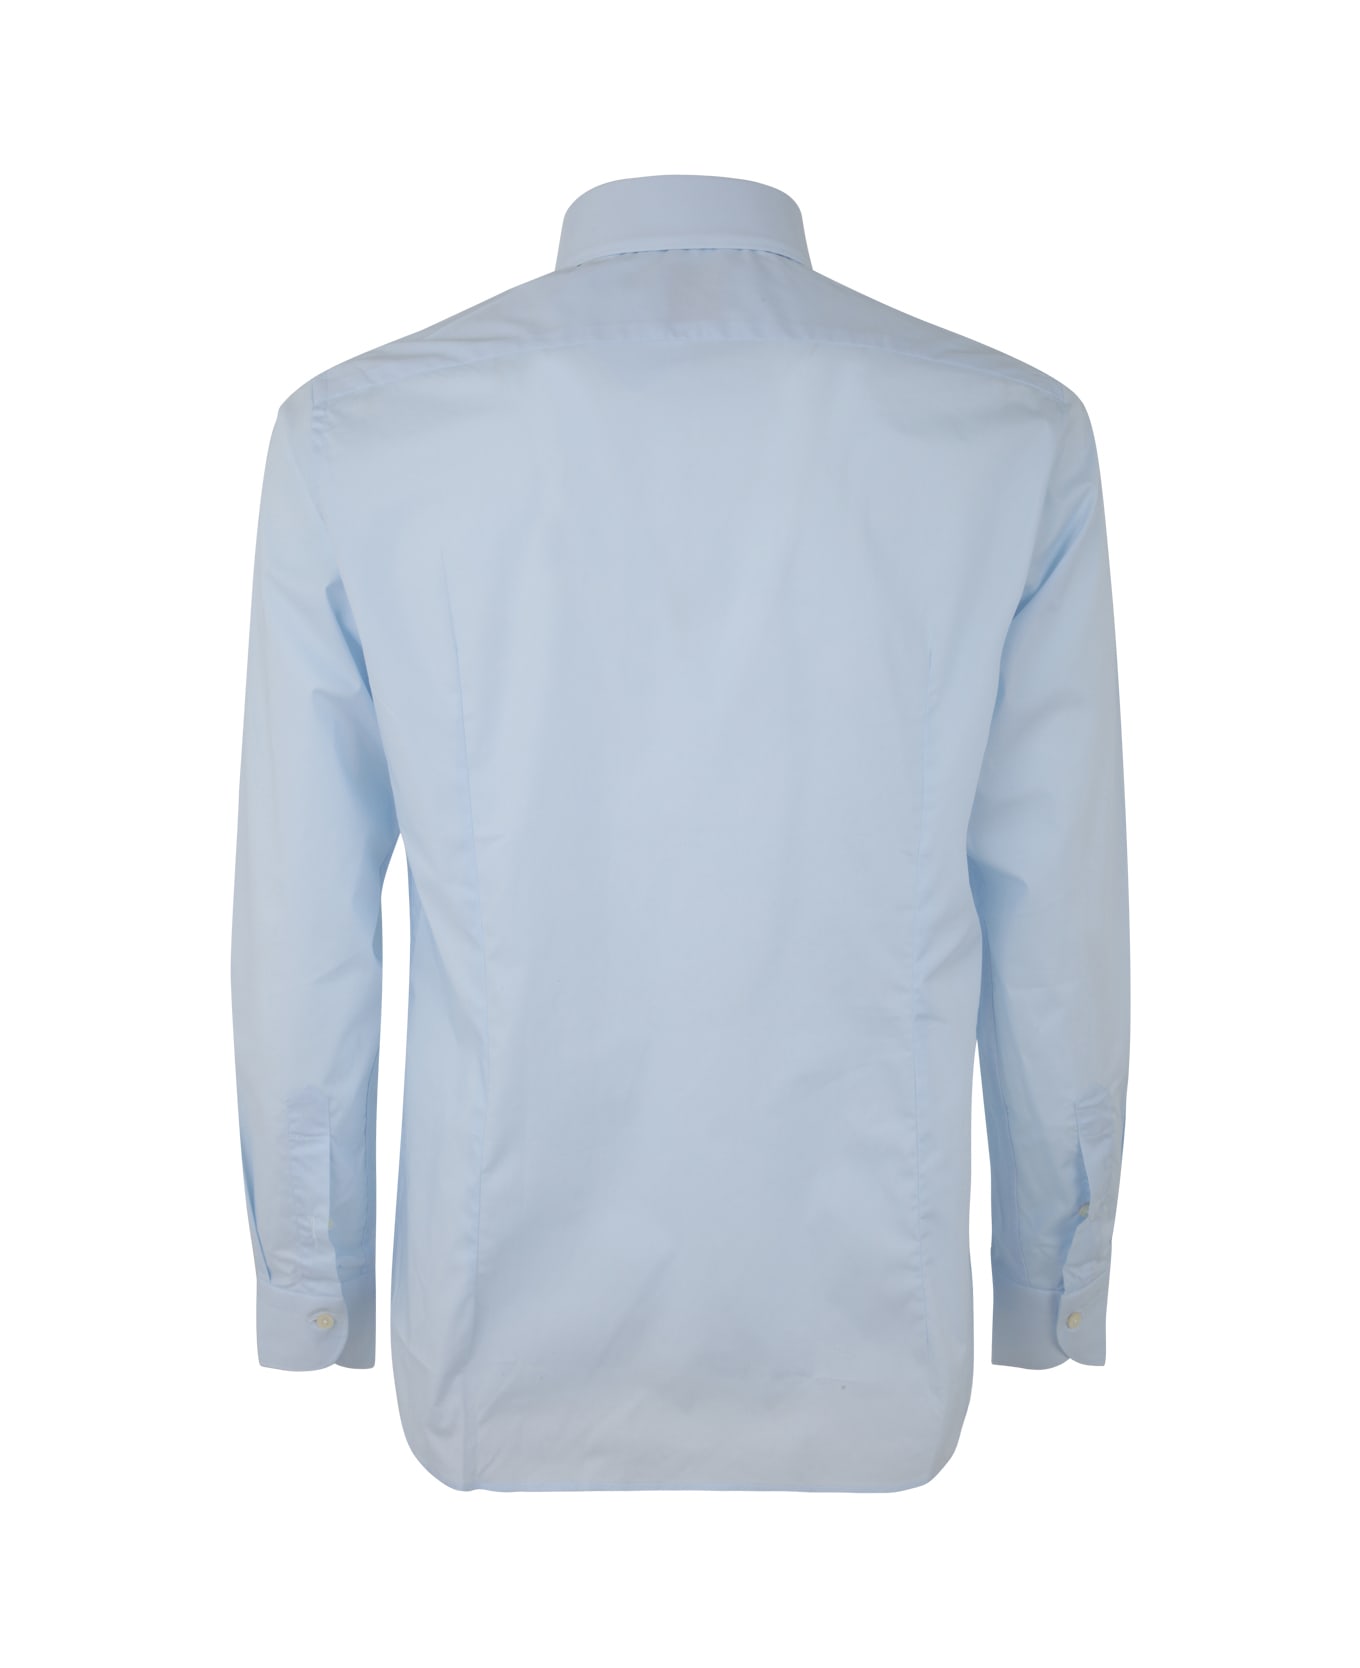 DNL Shirt - Light Blue シャツ